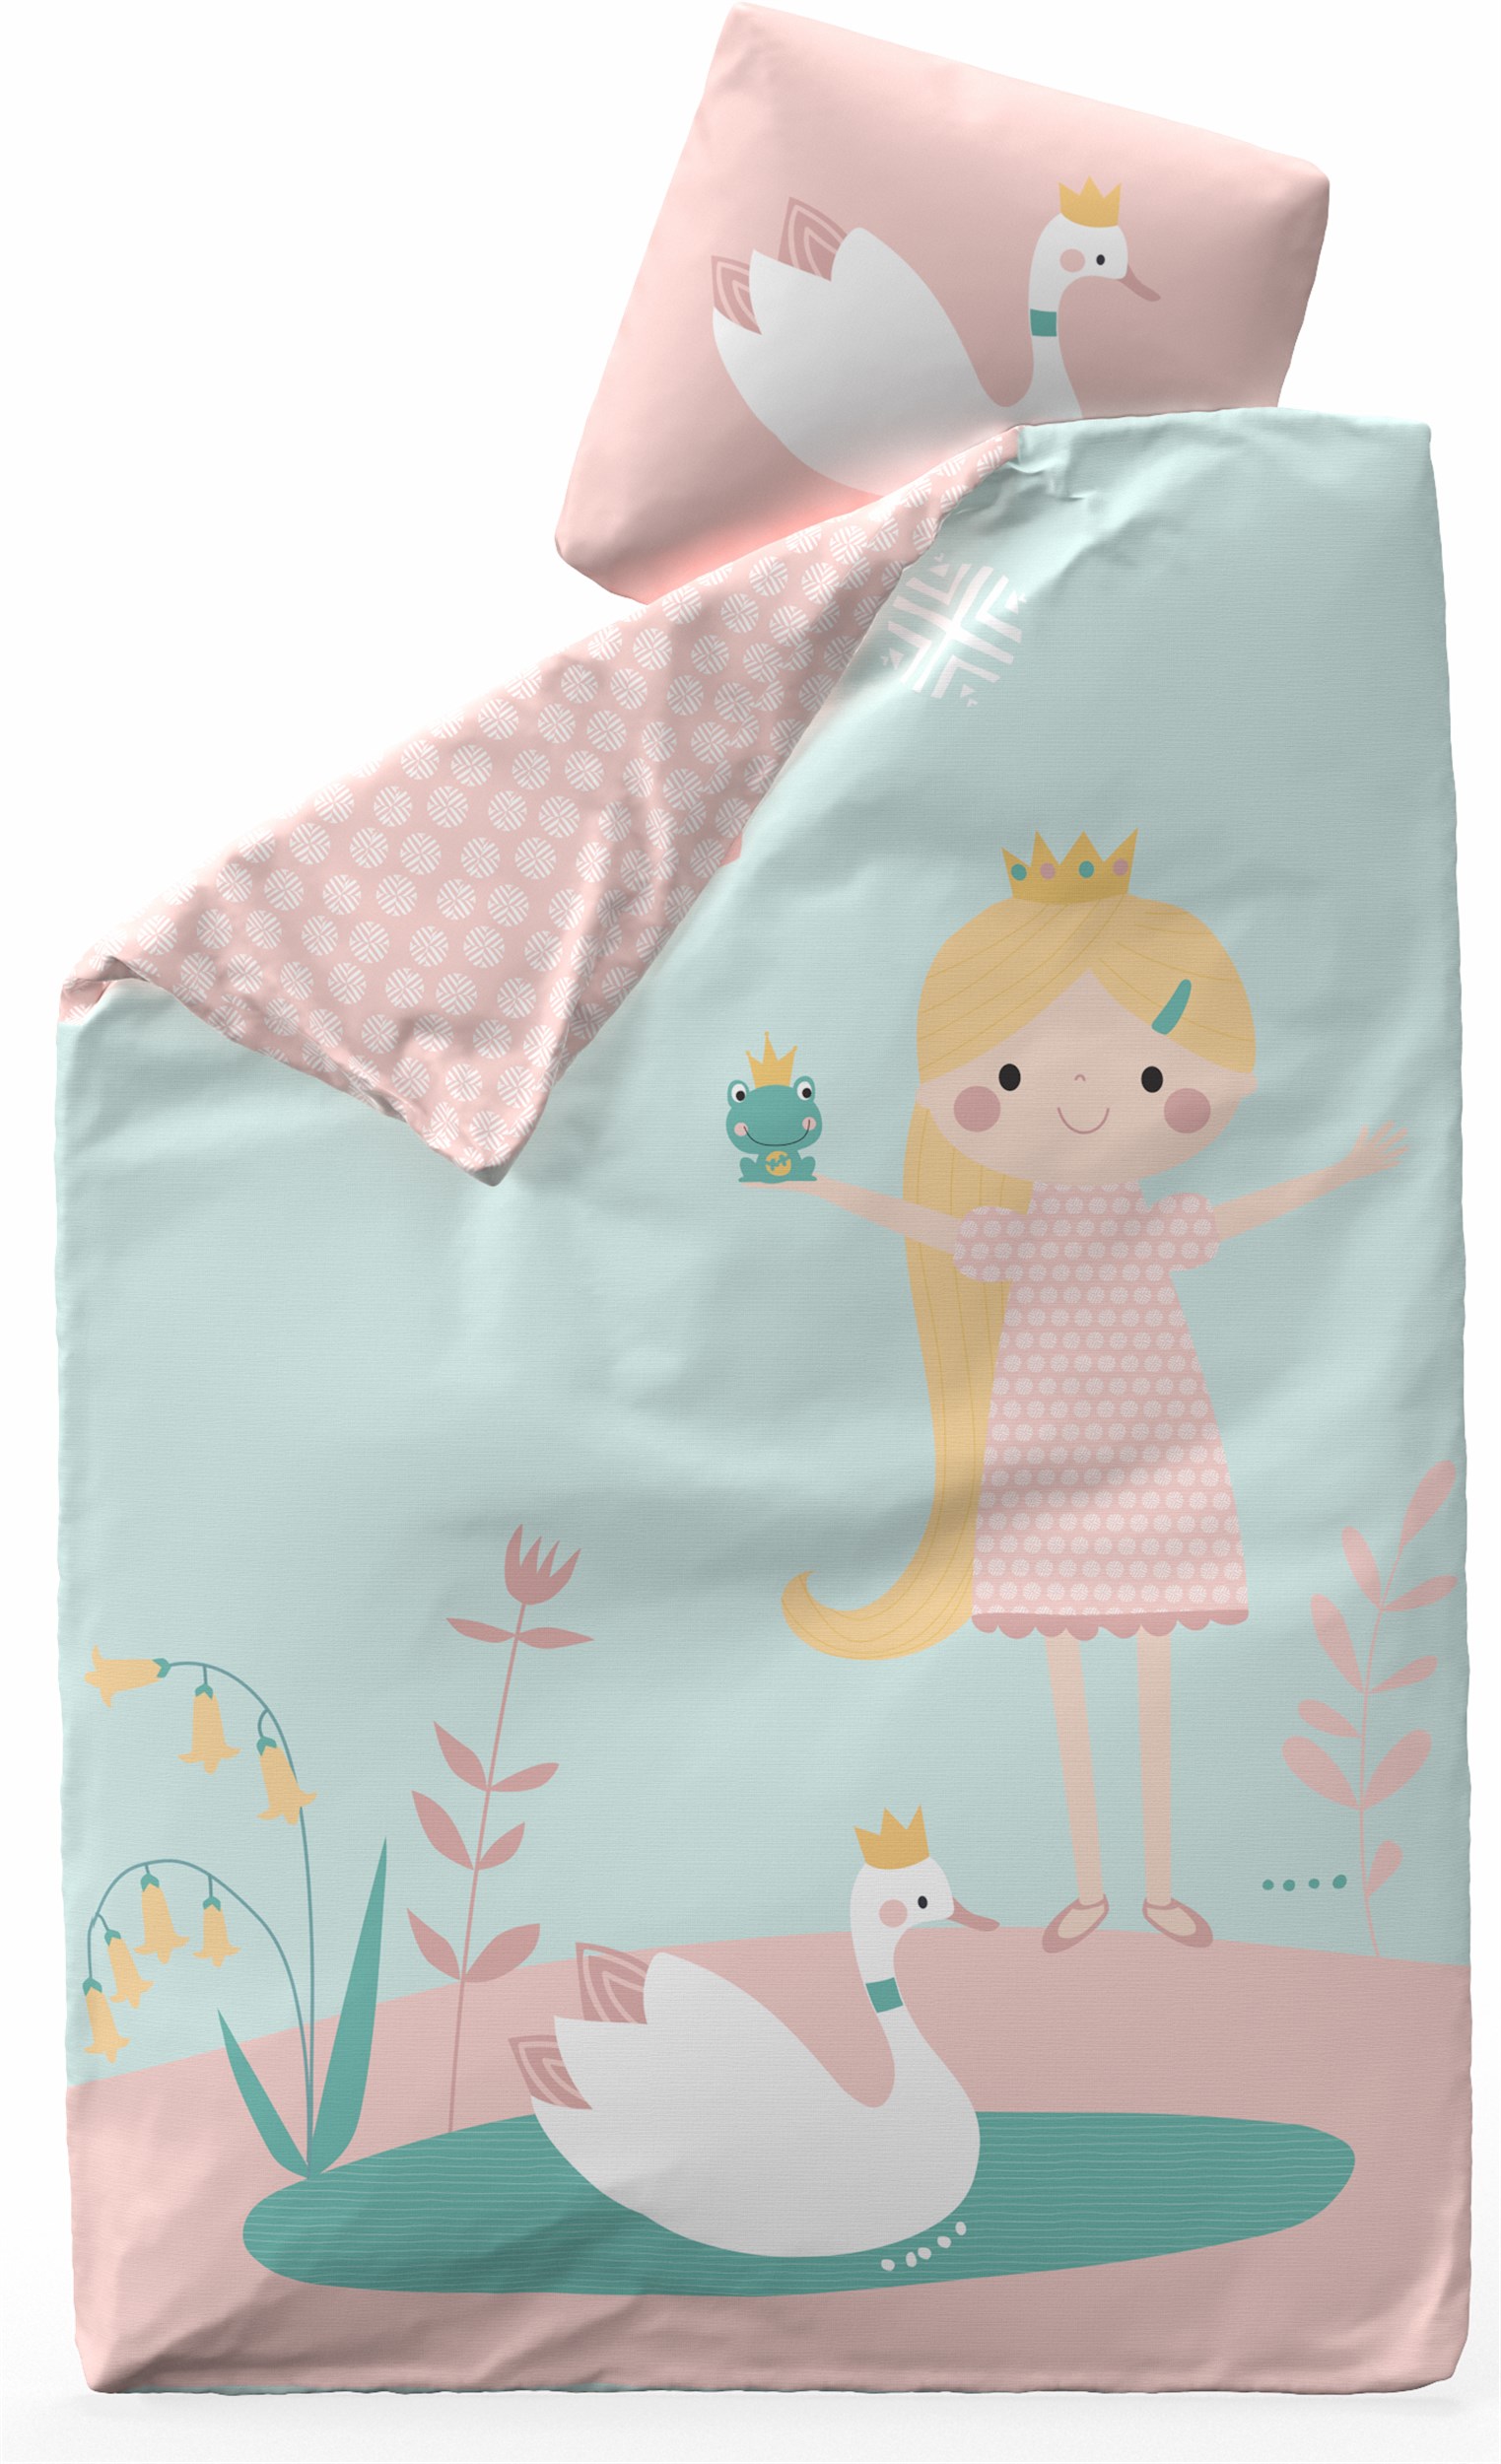 Flexa Classic Sengetøj 140 x 200 cm - Mintgrøn/lyserød bomuldssatin og little princess tema